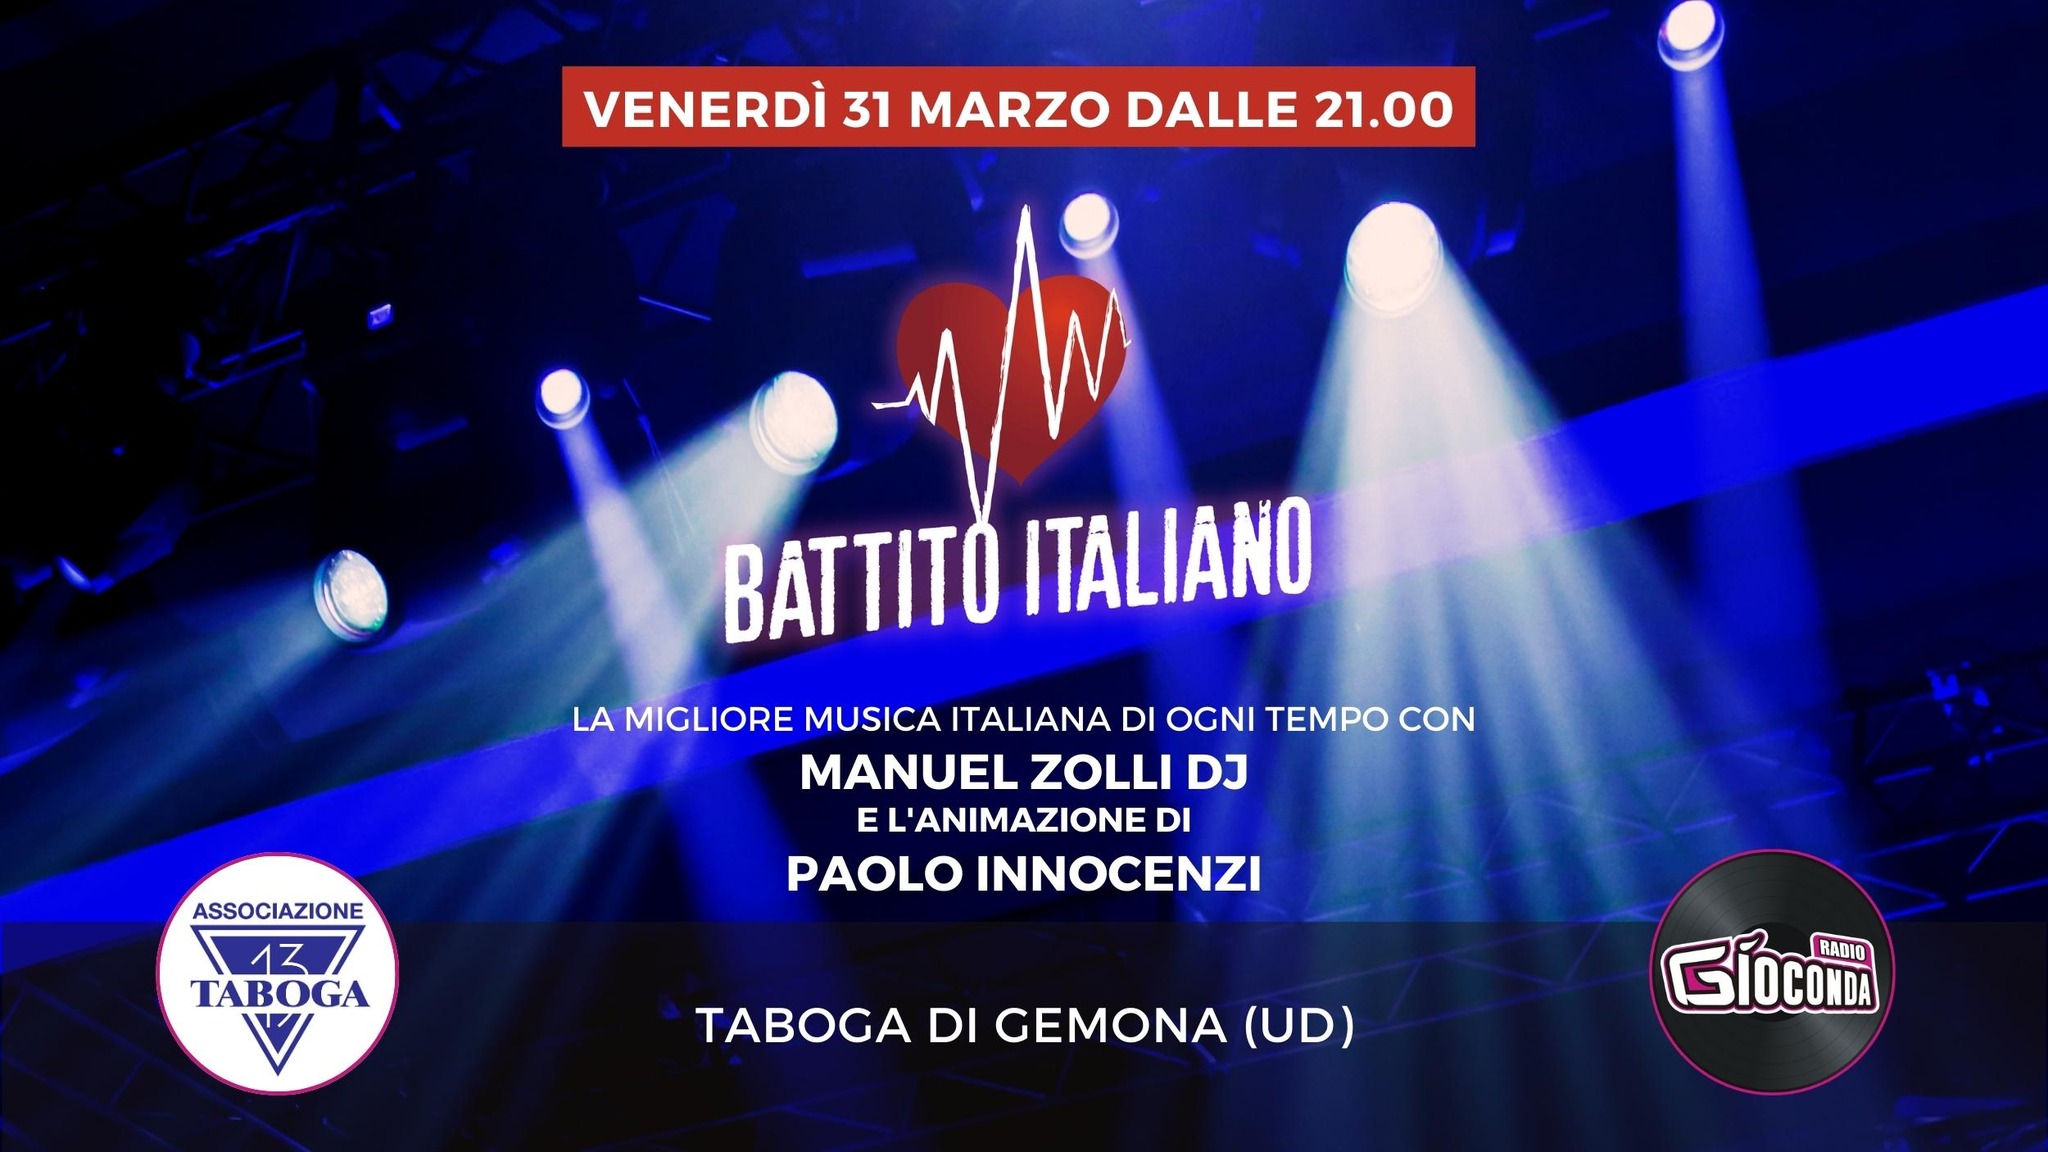 Battito Italiano, Taboga 13, Gemona del Friuli